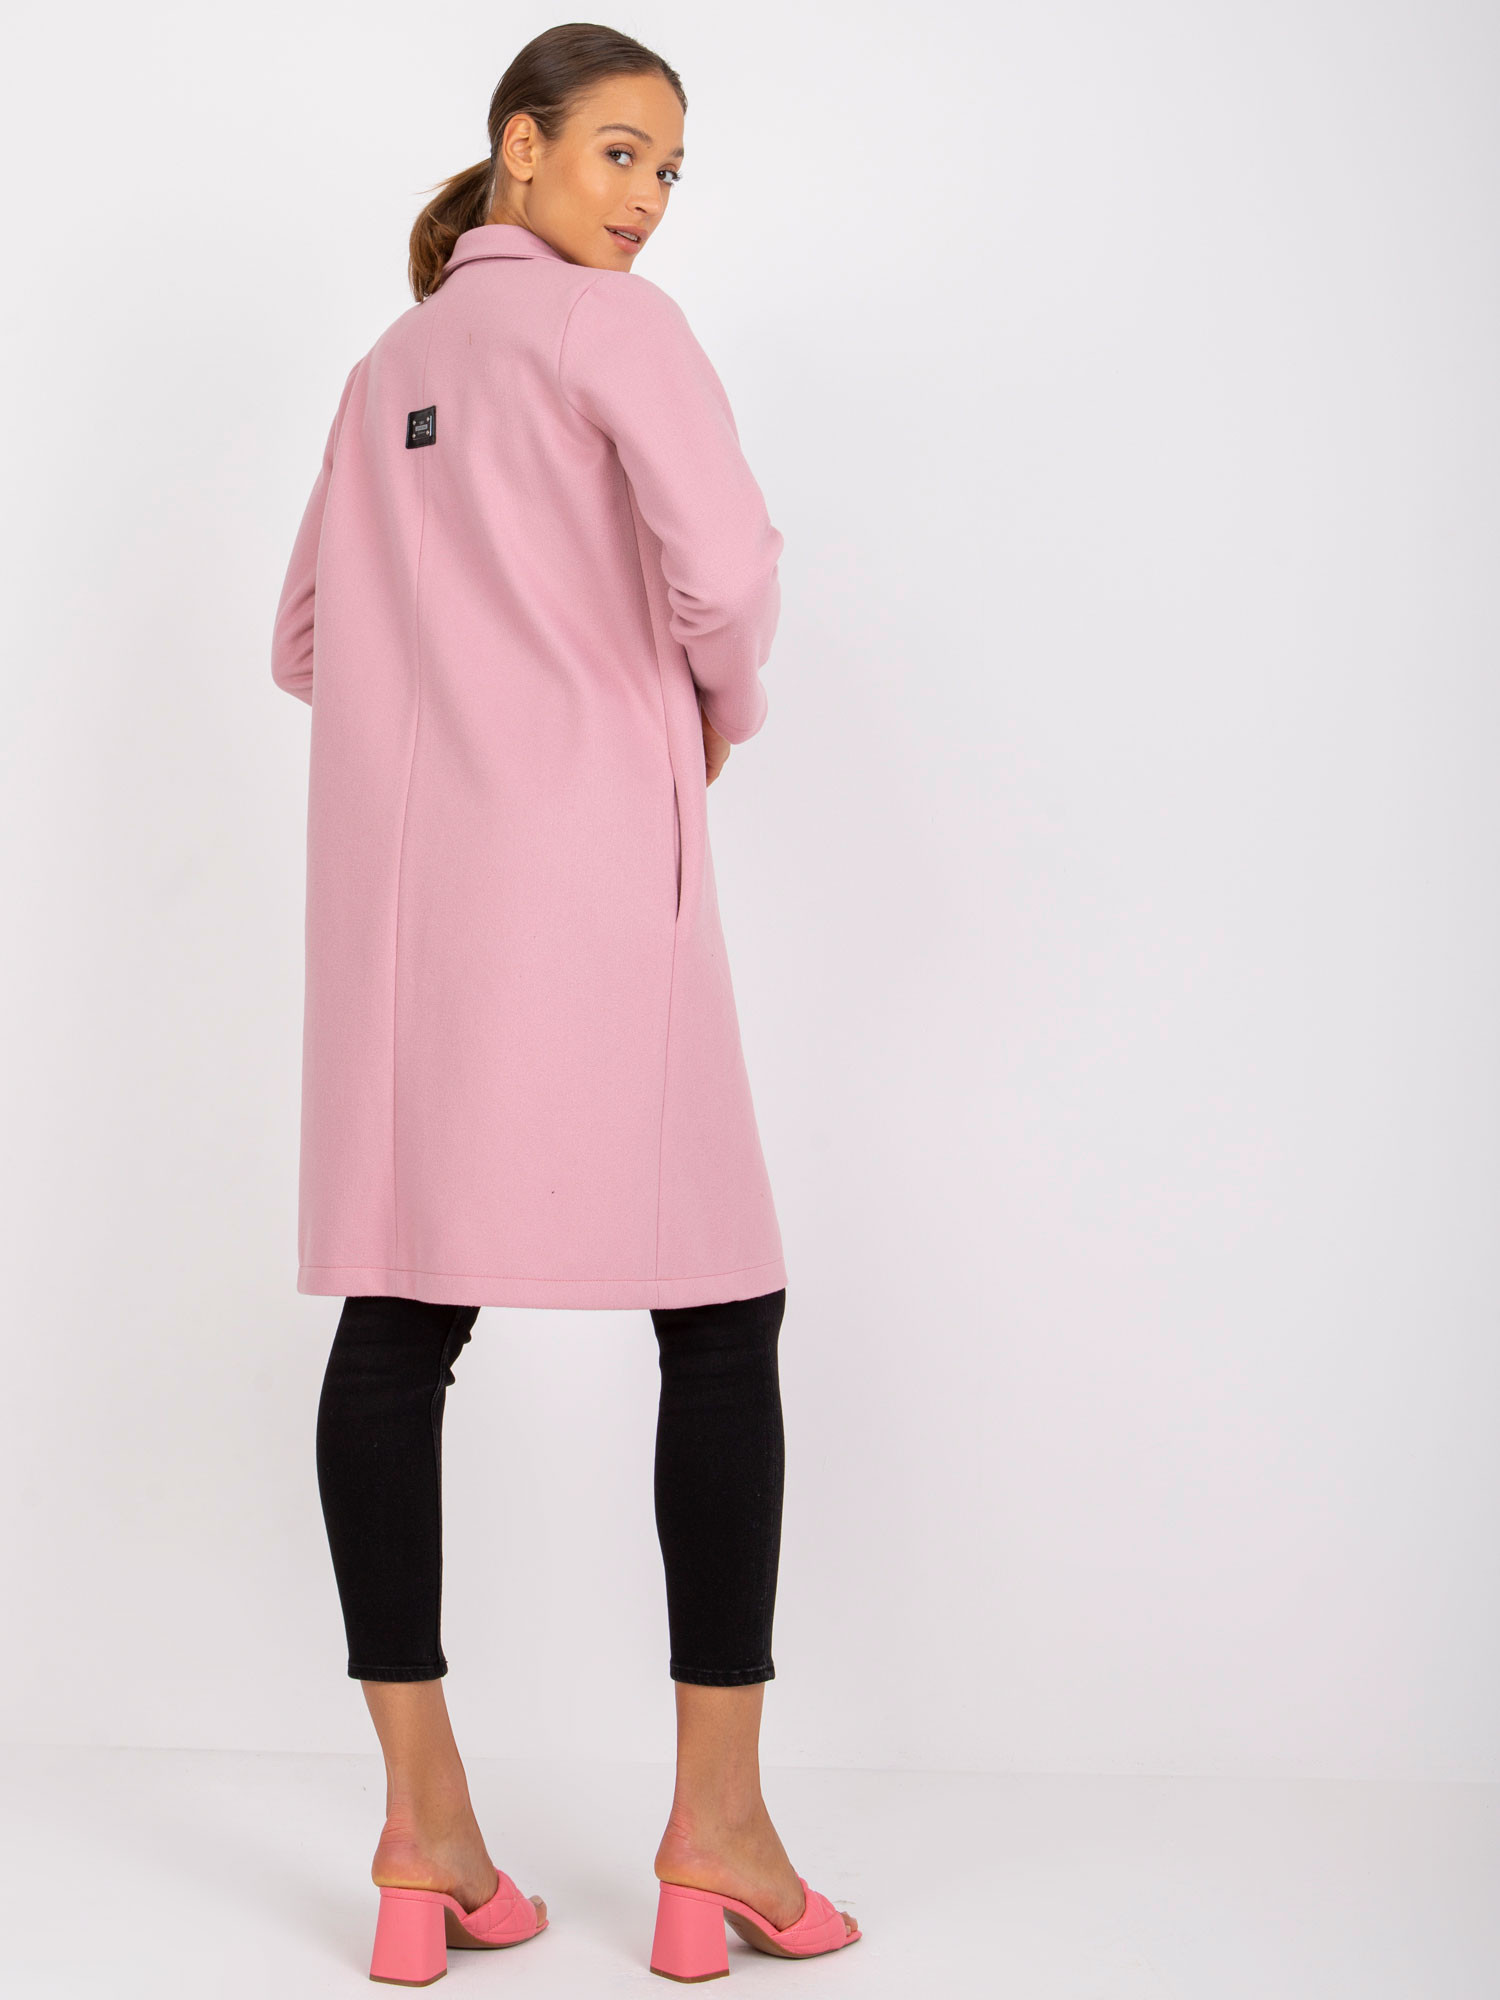 Dámský kabát model 18257706 světle růžový RUE PARIS světle růžová L/XL - FPrice